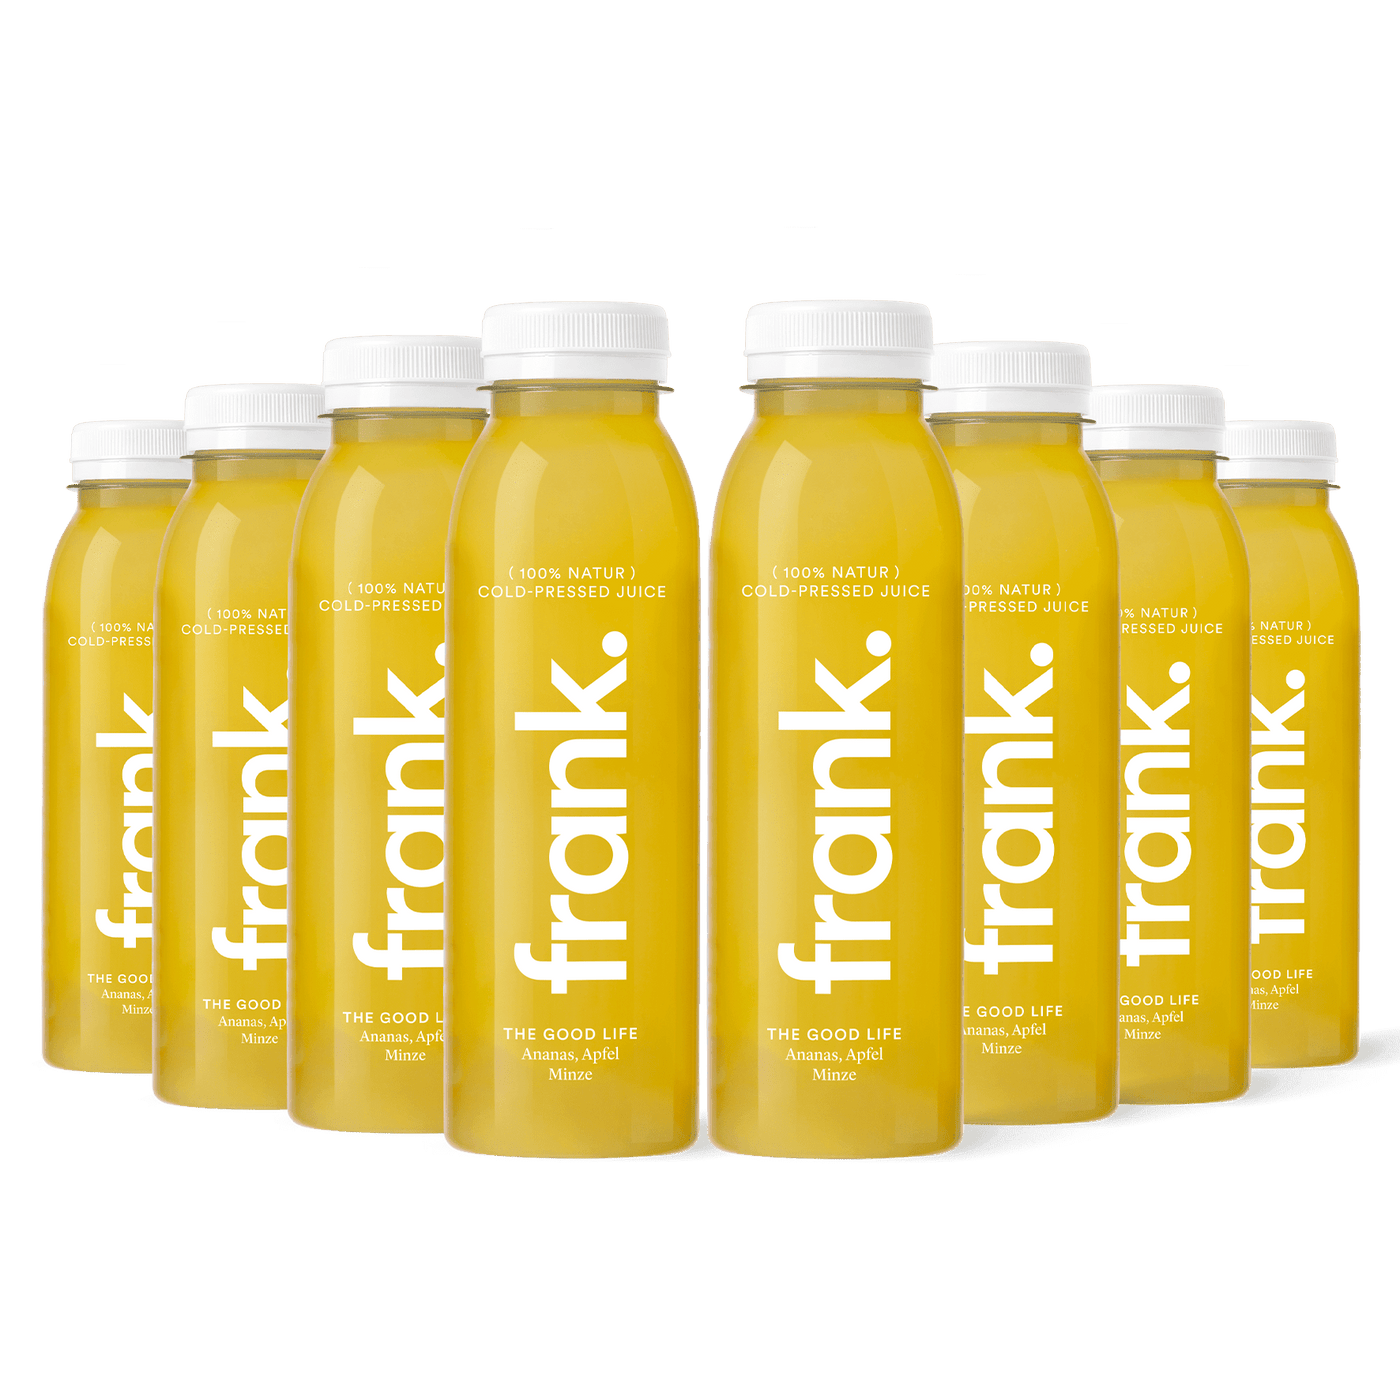 Darstellung der Juice-Box The Good Life mit Ananas, Apfel und Minze bestehend aus 8 Säften von frank